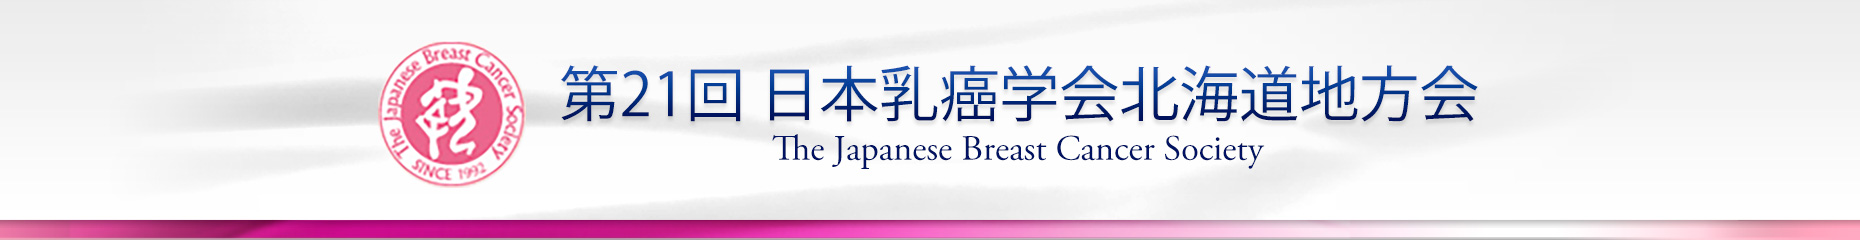 第21回 日本乳癌学会北海道地方会